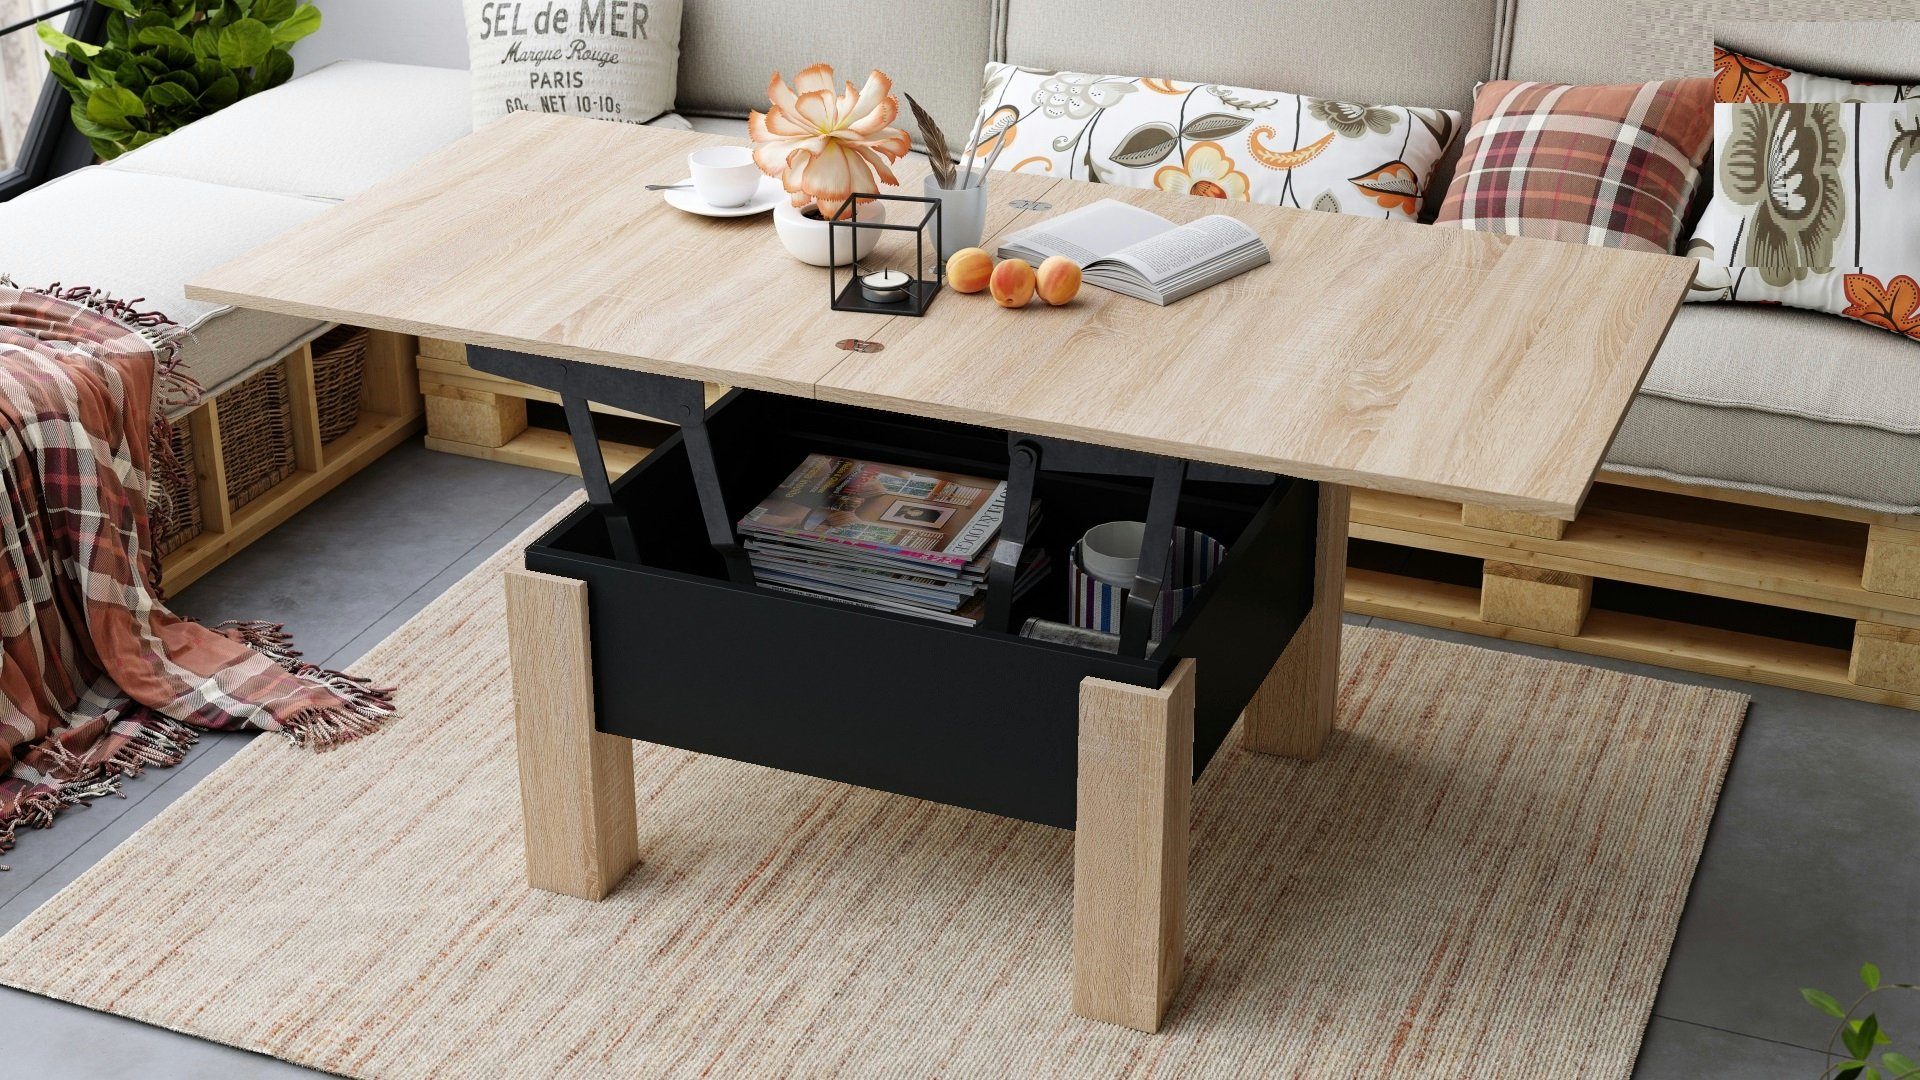 Tisch matt / Esstisch höhenverstellbar Design designimpex Couchtisch Schwarz Eiche Oslo aufklappbar Sonoma Couchtisch